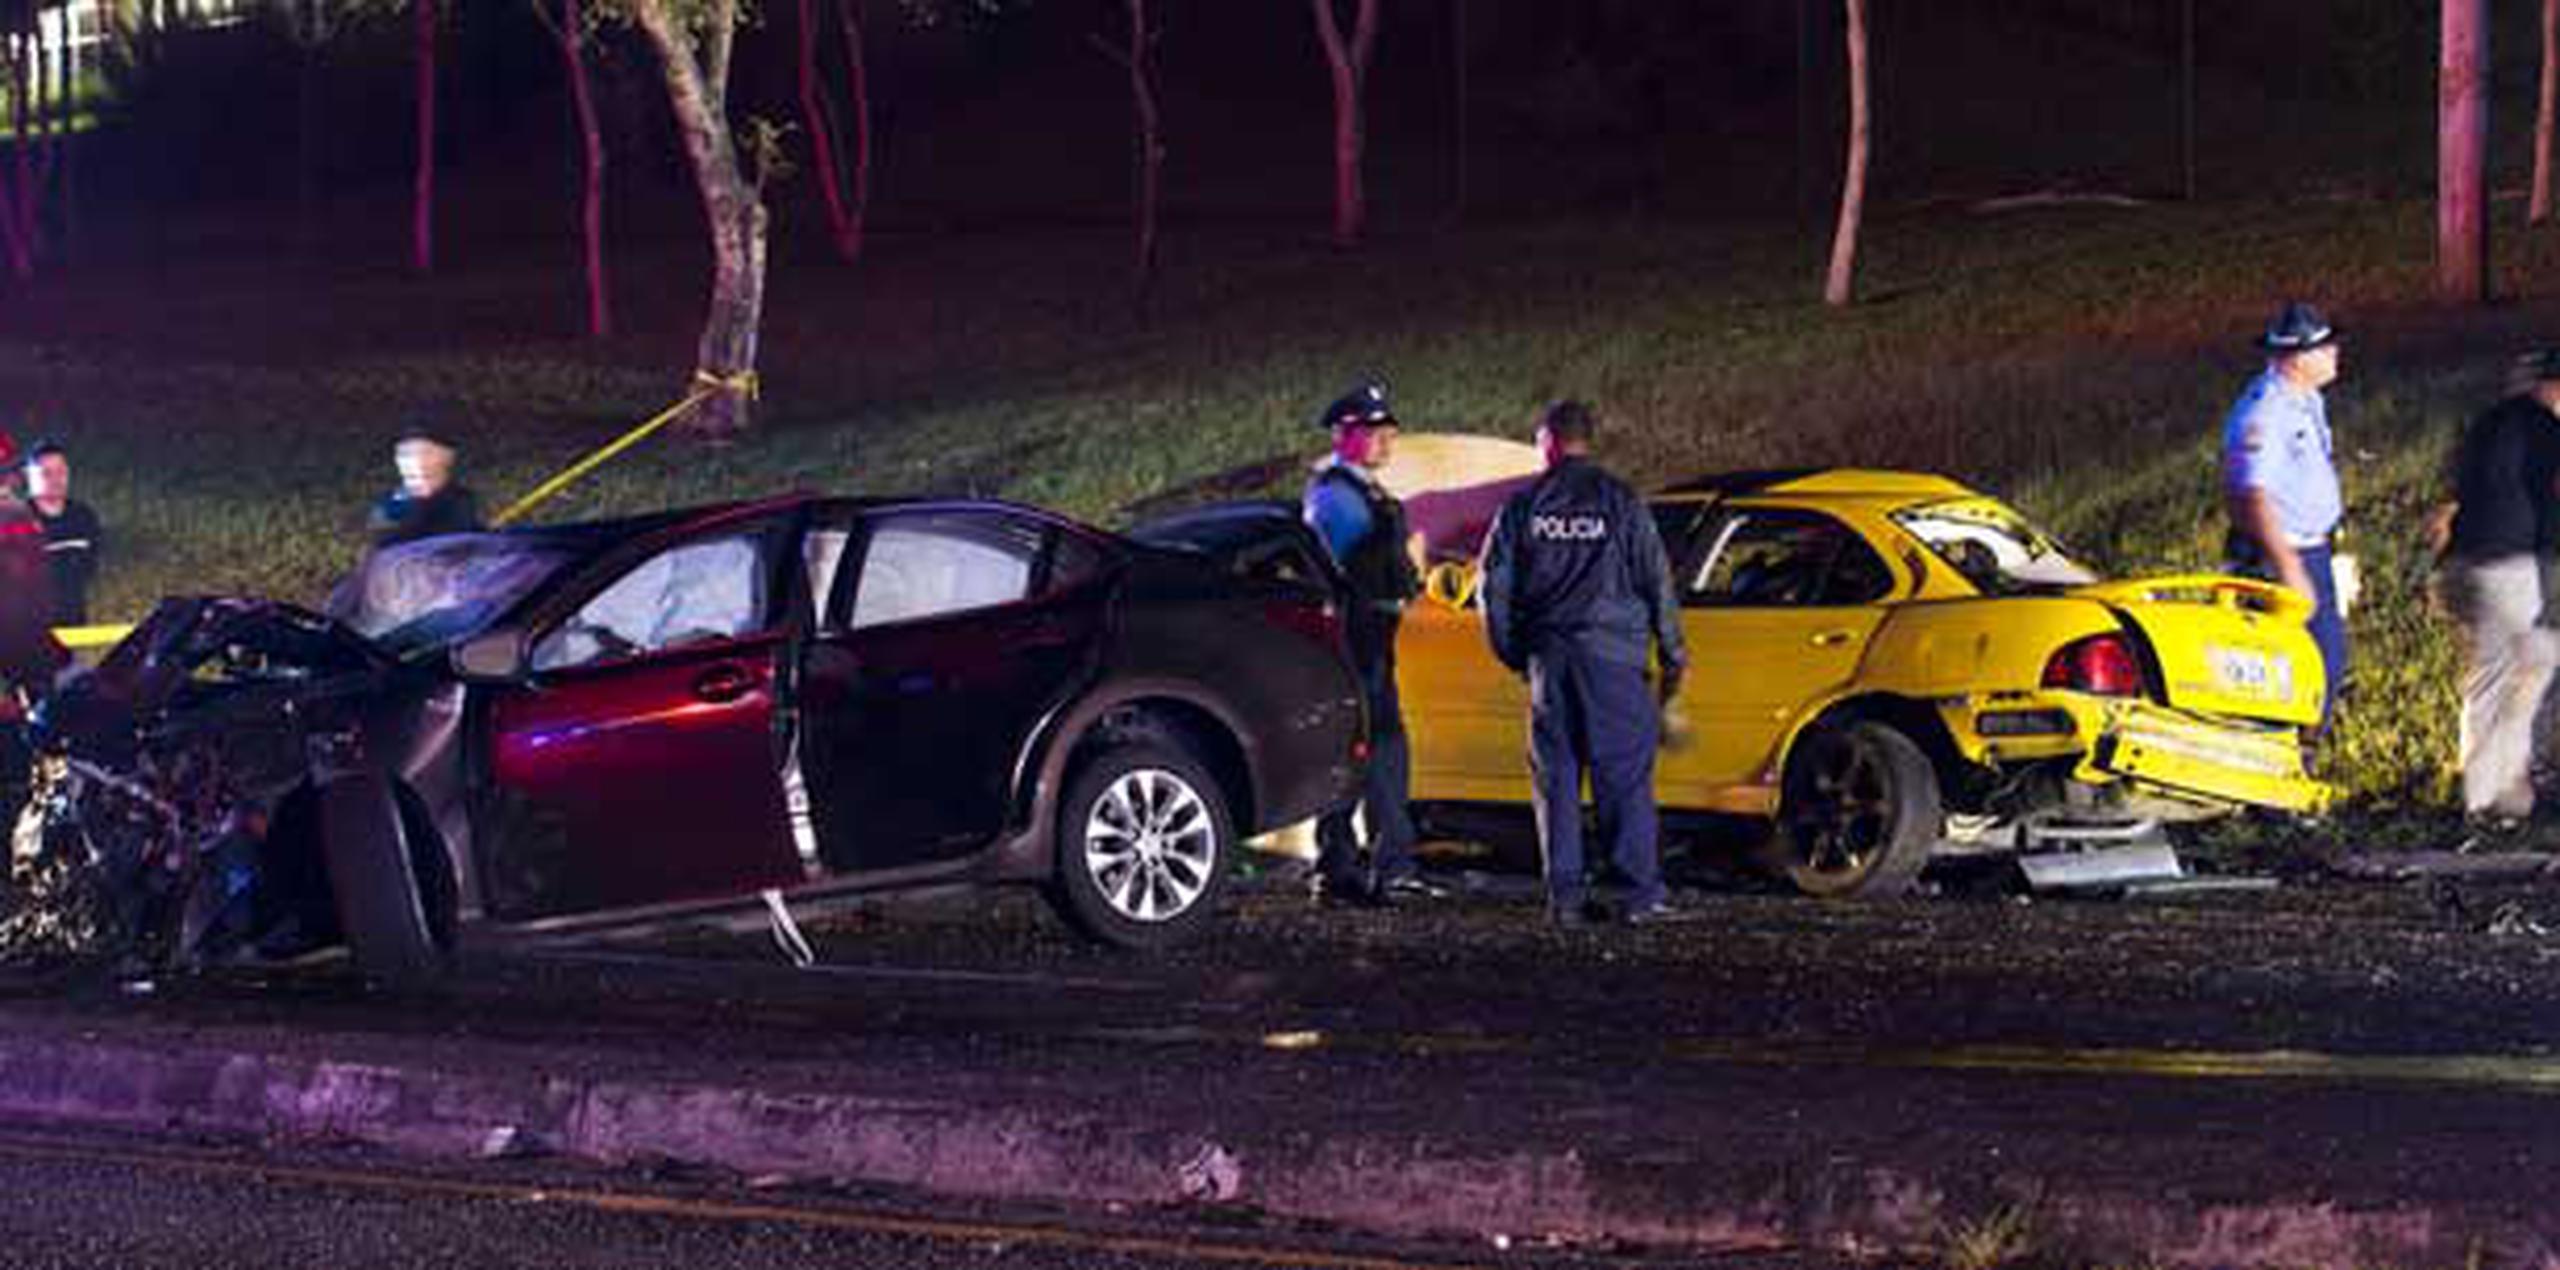 El accidente ocurrió en el semáforo que ubica frente a la compañíaa Avon en la carretera PR-1 en Caguas.(tonito.zayas@gfrmedia.com)